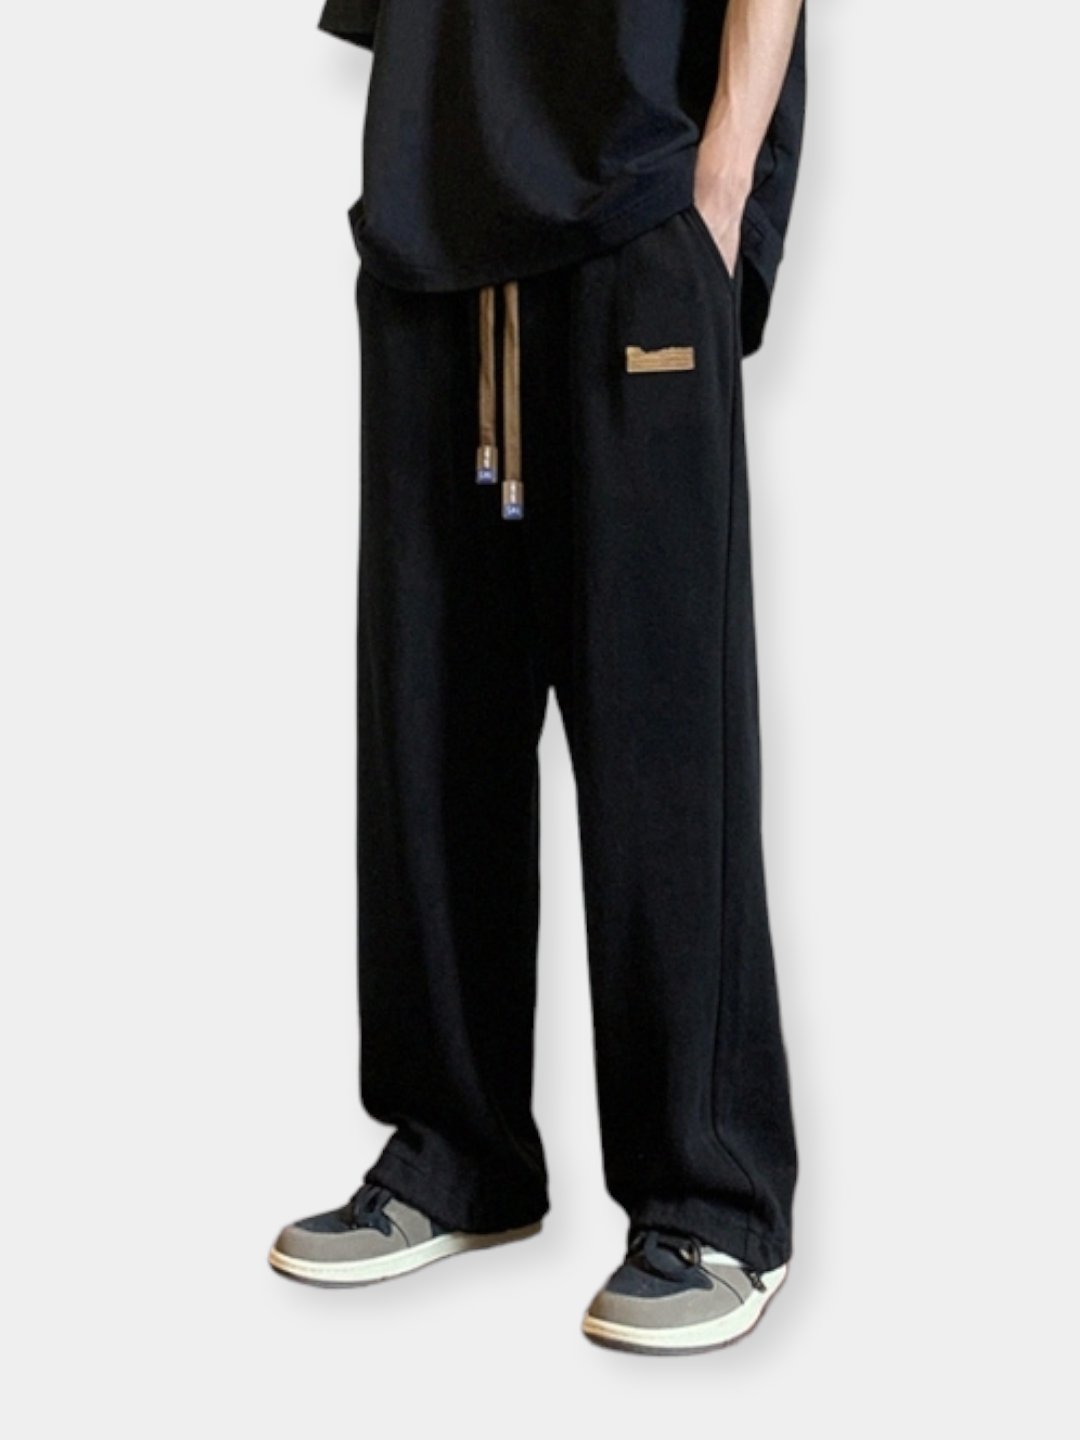 Брюки мужские, широкие штаны, трико, прямые брюки свободного кроя купить поцене 1650 ₽ в интернет-магазине KazanExpress